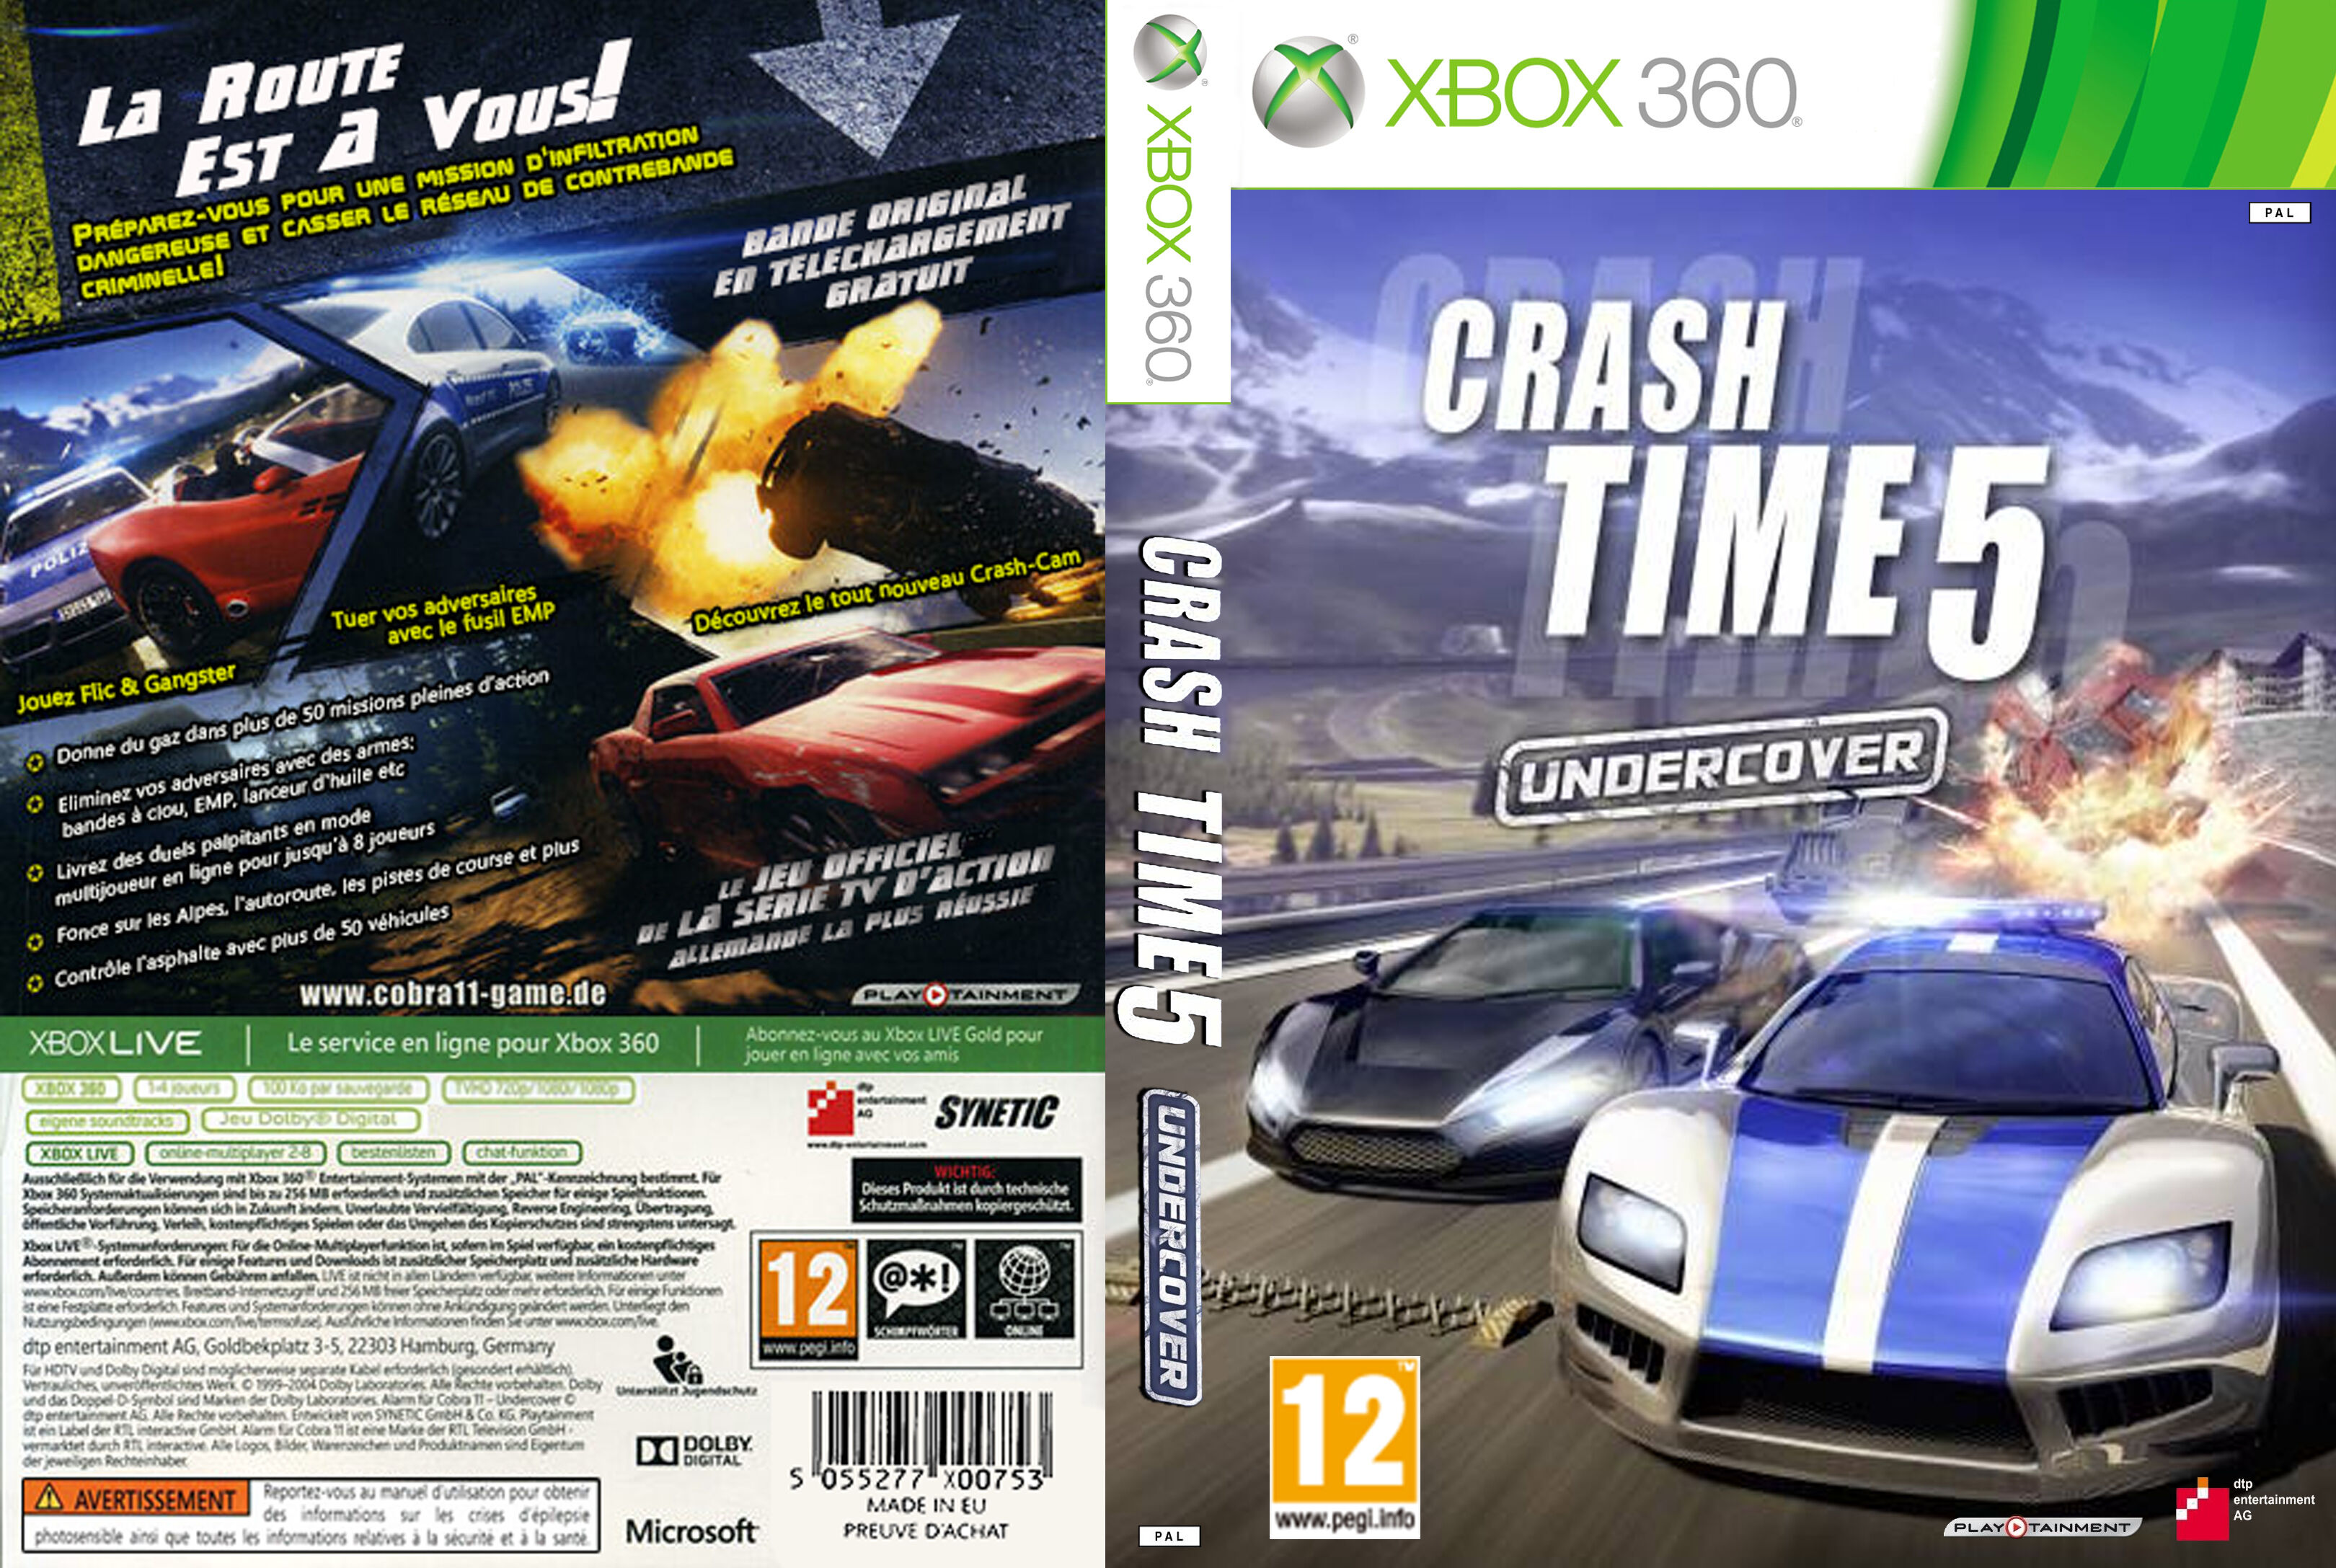 Jeux Vidéo Crash Time 5 Undercover Xbox 360 d'occasion